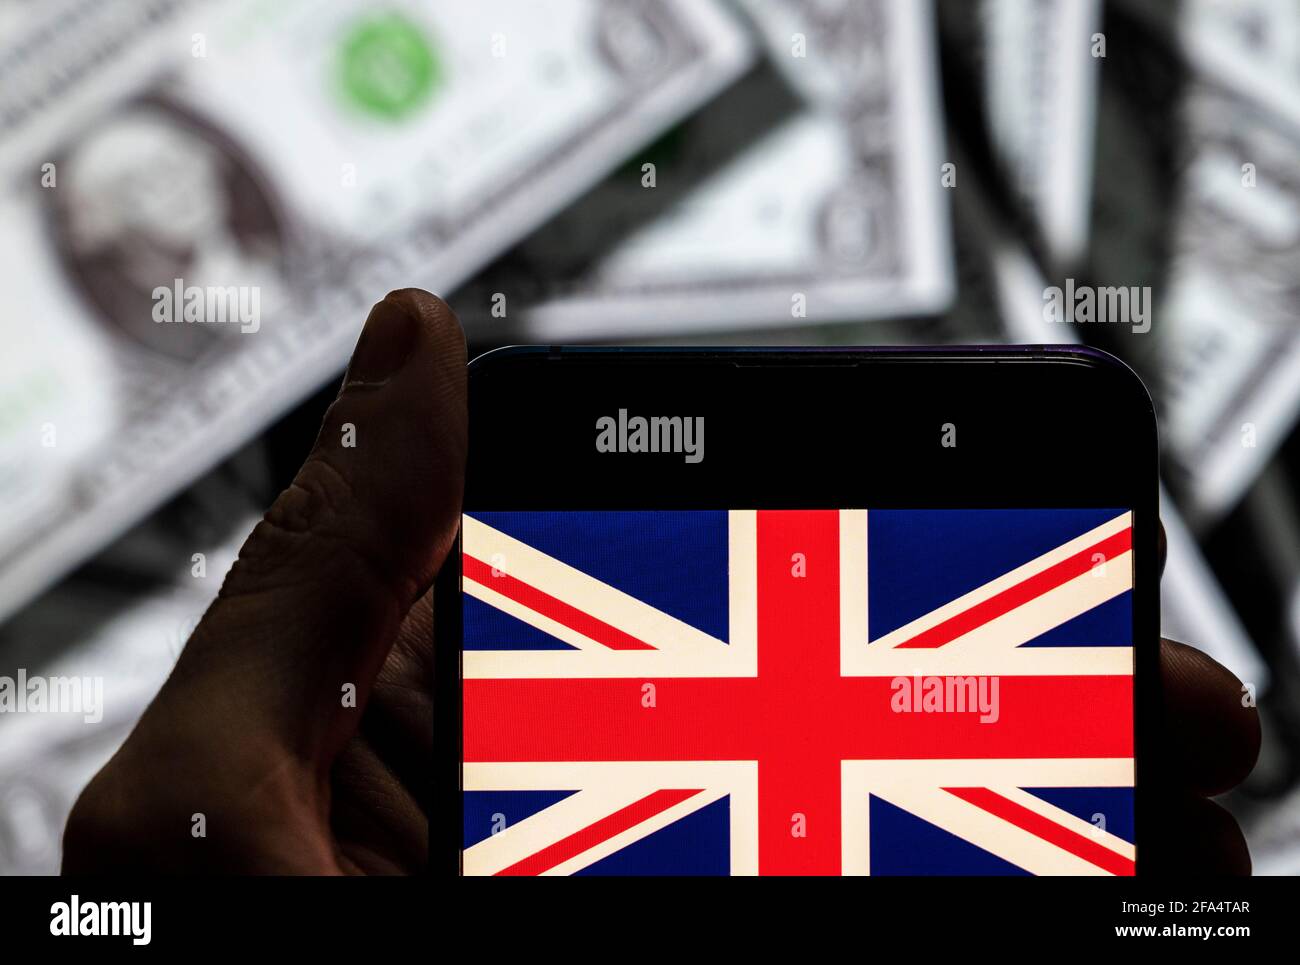 Dans cette illustration de photo le drapeau du Royaume-Uni de Grande-Bretagne et d'Irlande du Nord vu sur un écran d'appareil mobile Android avec la devise de l'icône dollar des États-Unis, symbole d'icône $ en arrière-plan. Banque D'Images